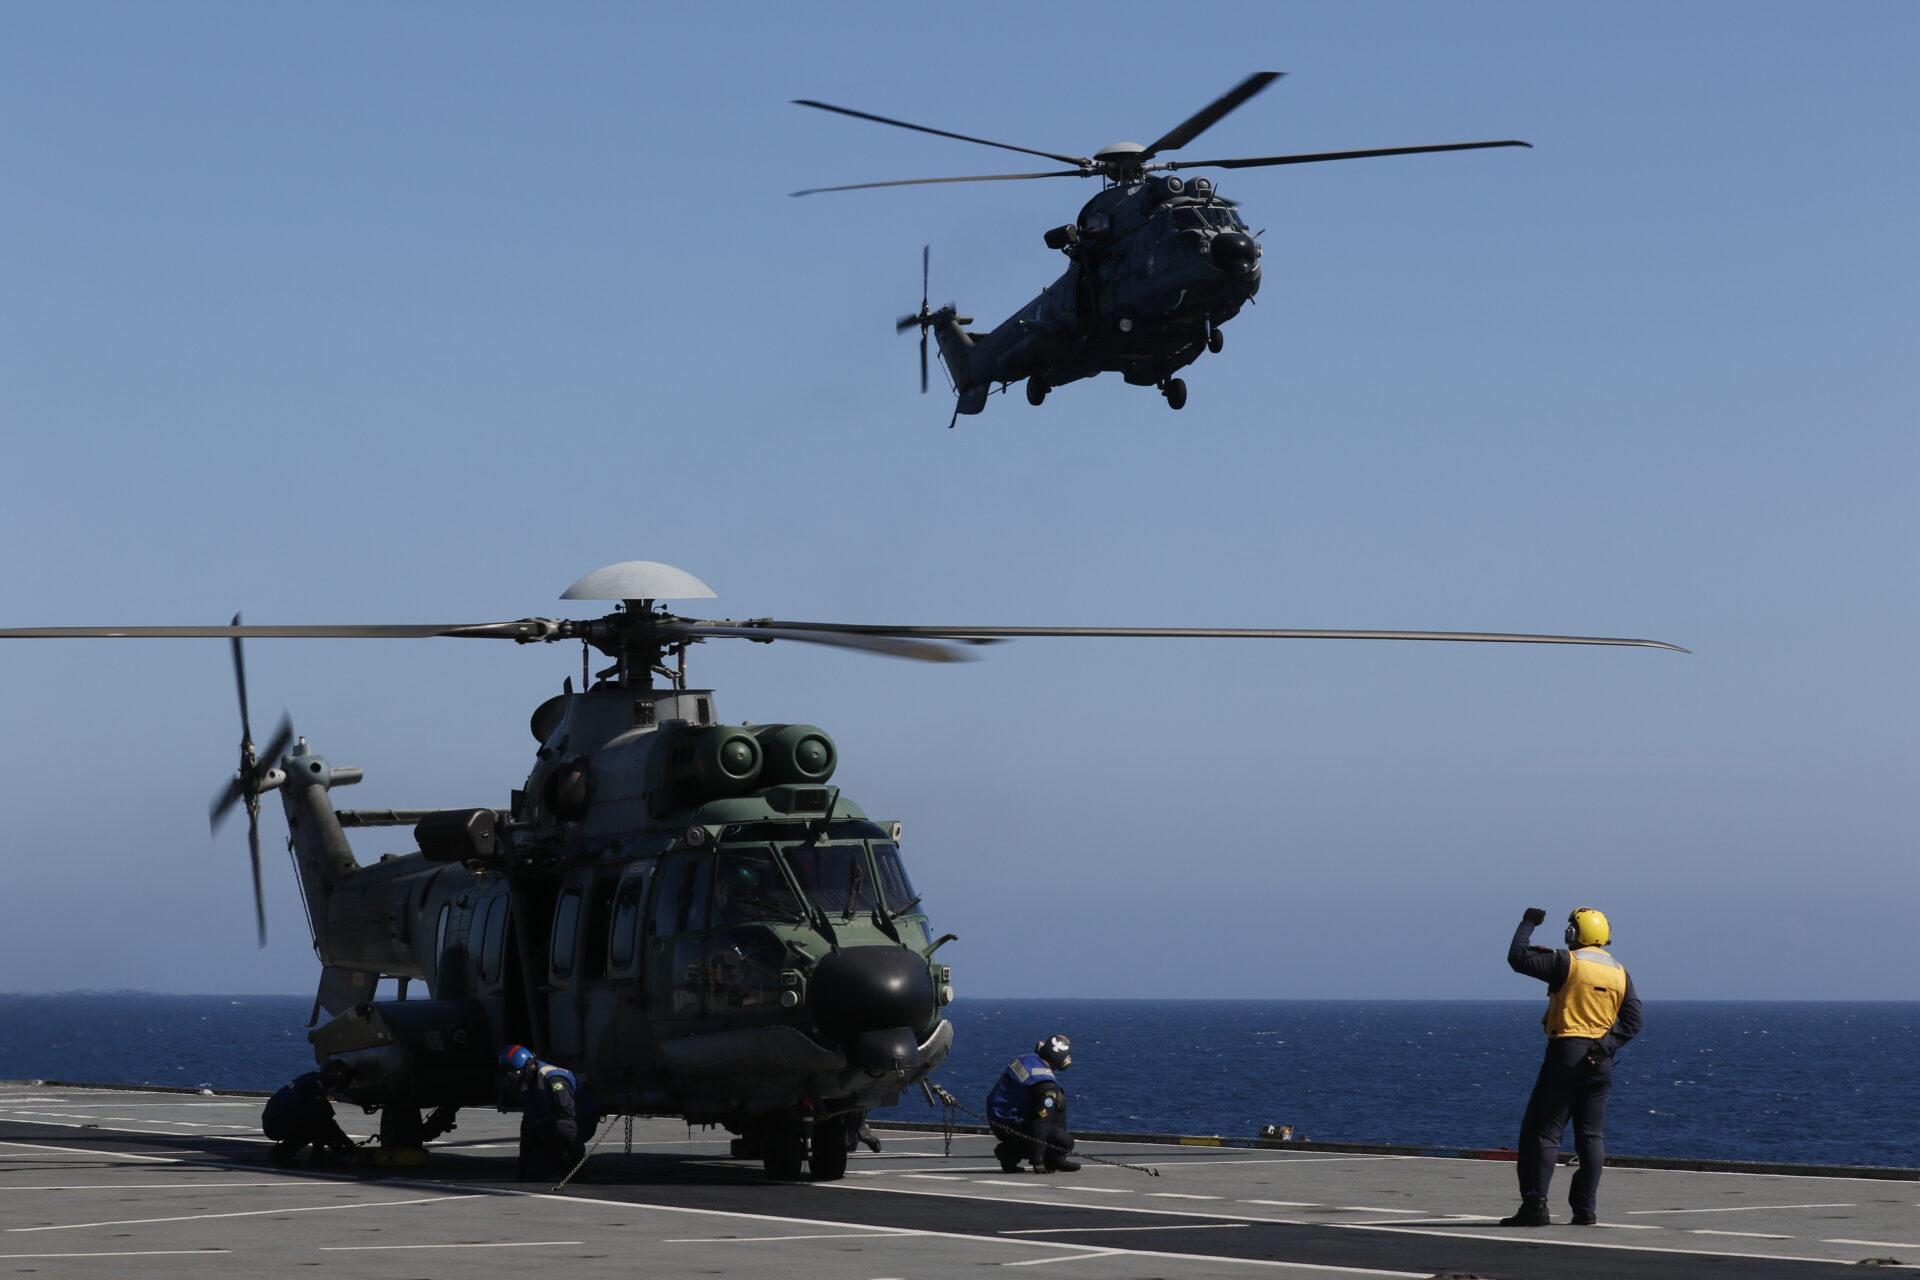 Helicópteros das três Forças Armadas (Marinha, Exército e Força Aérea), realizam manobras no Navio-Aeródromo Multipropósito Atlântico em movimento durante a Operação Poseidon 2021